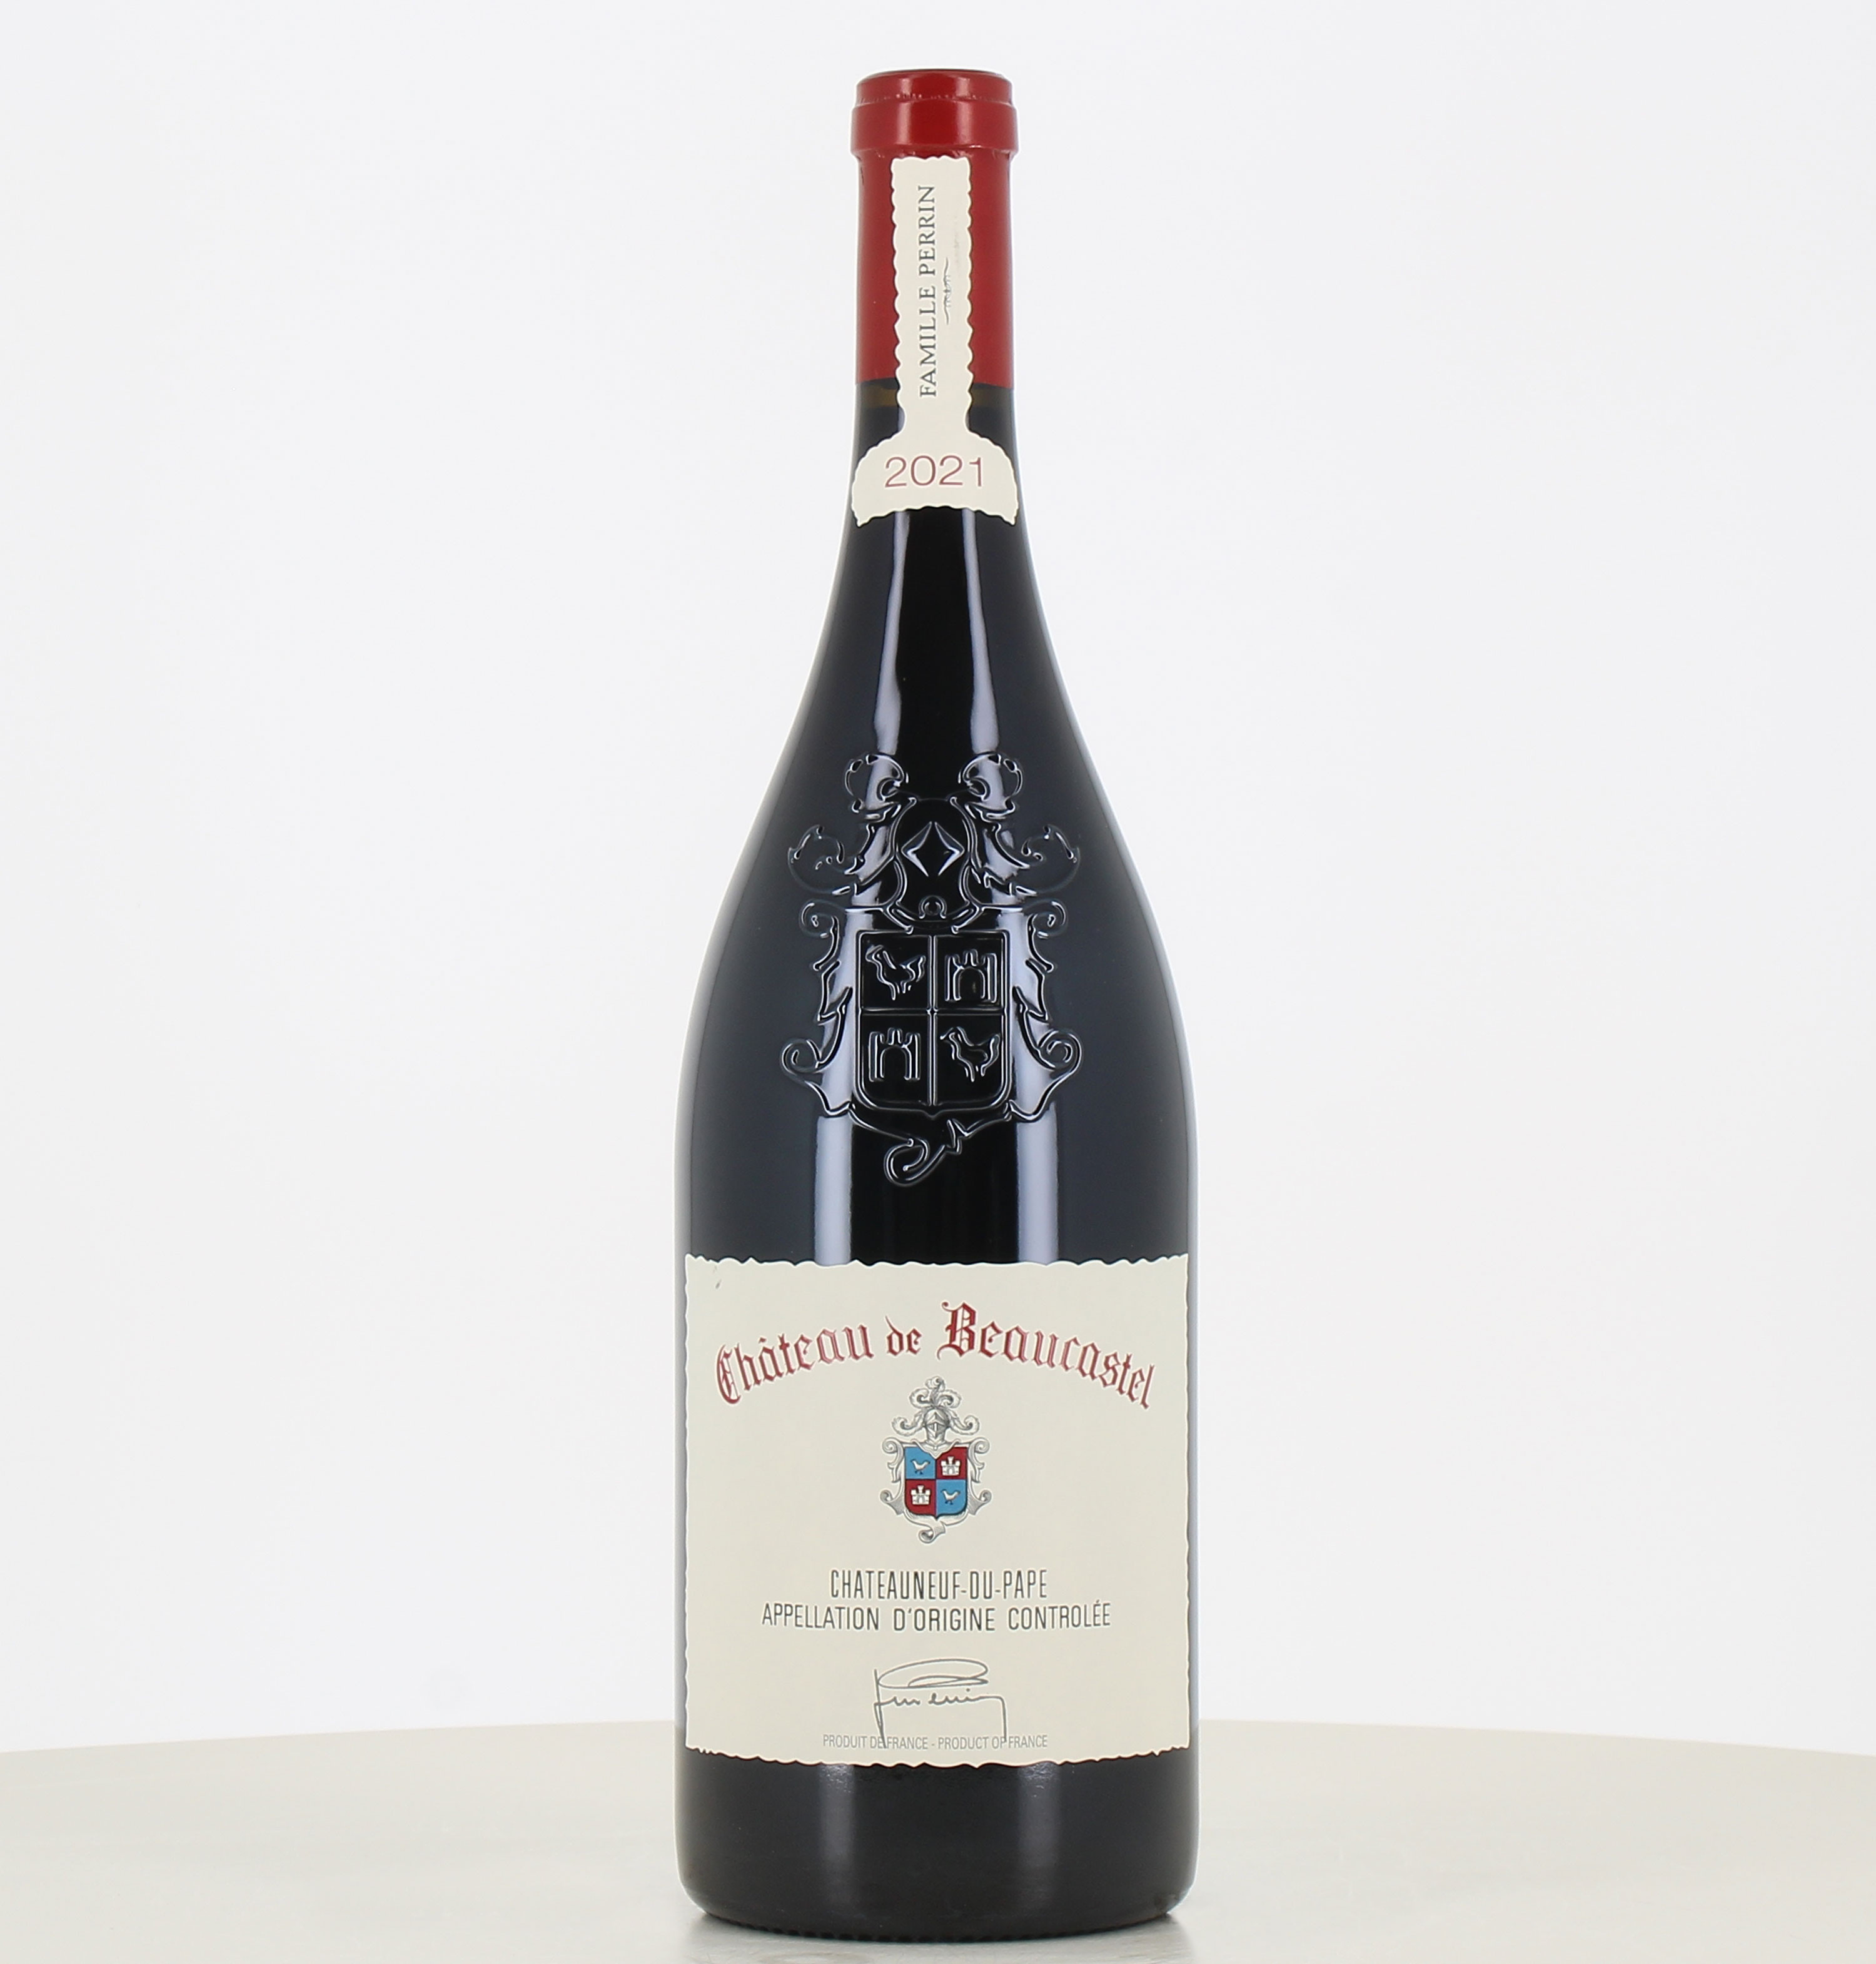 Magnum red wine Chateauneuf du Pape Château de Beaucastel 2021 